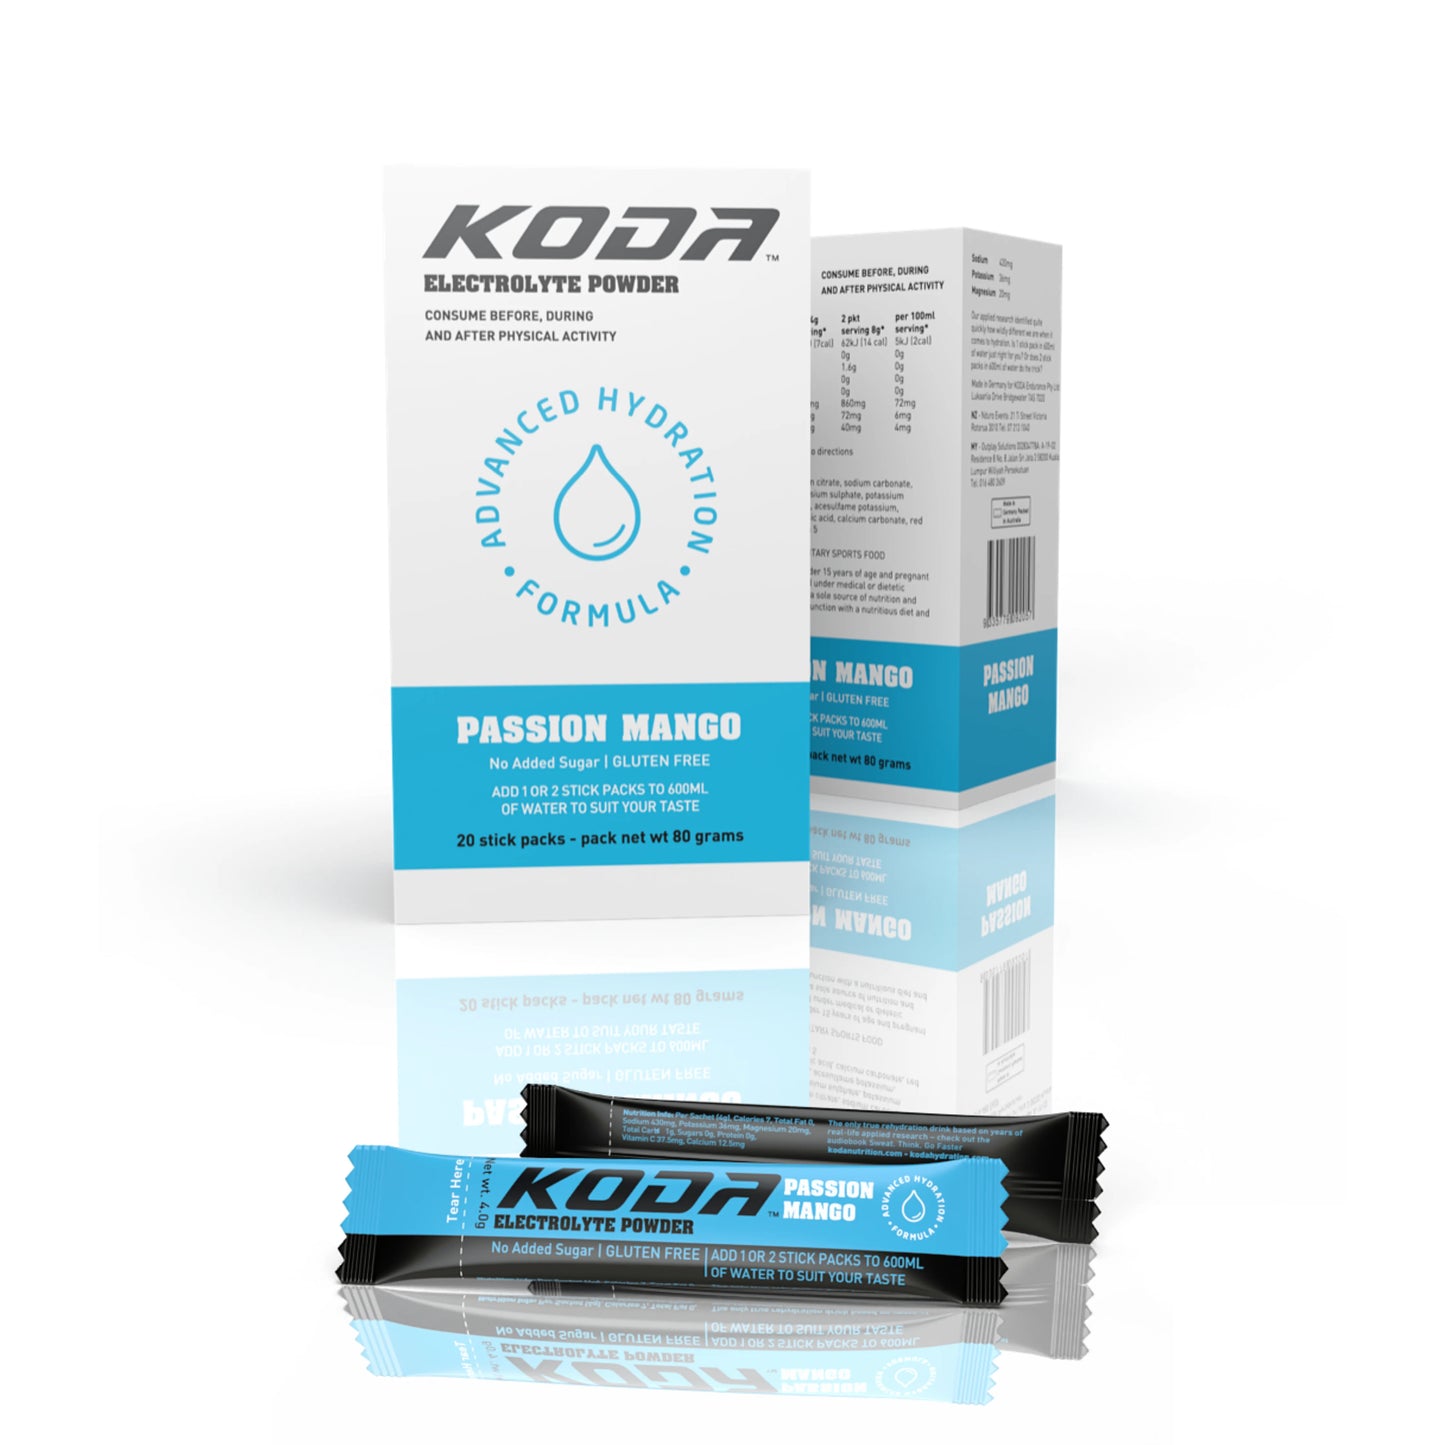 KODA Electrolyte Powder 20 Stick Pack | Passion Mango